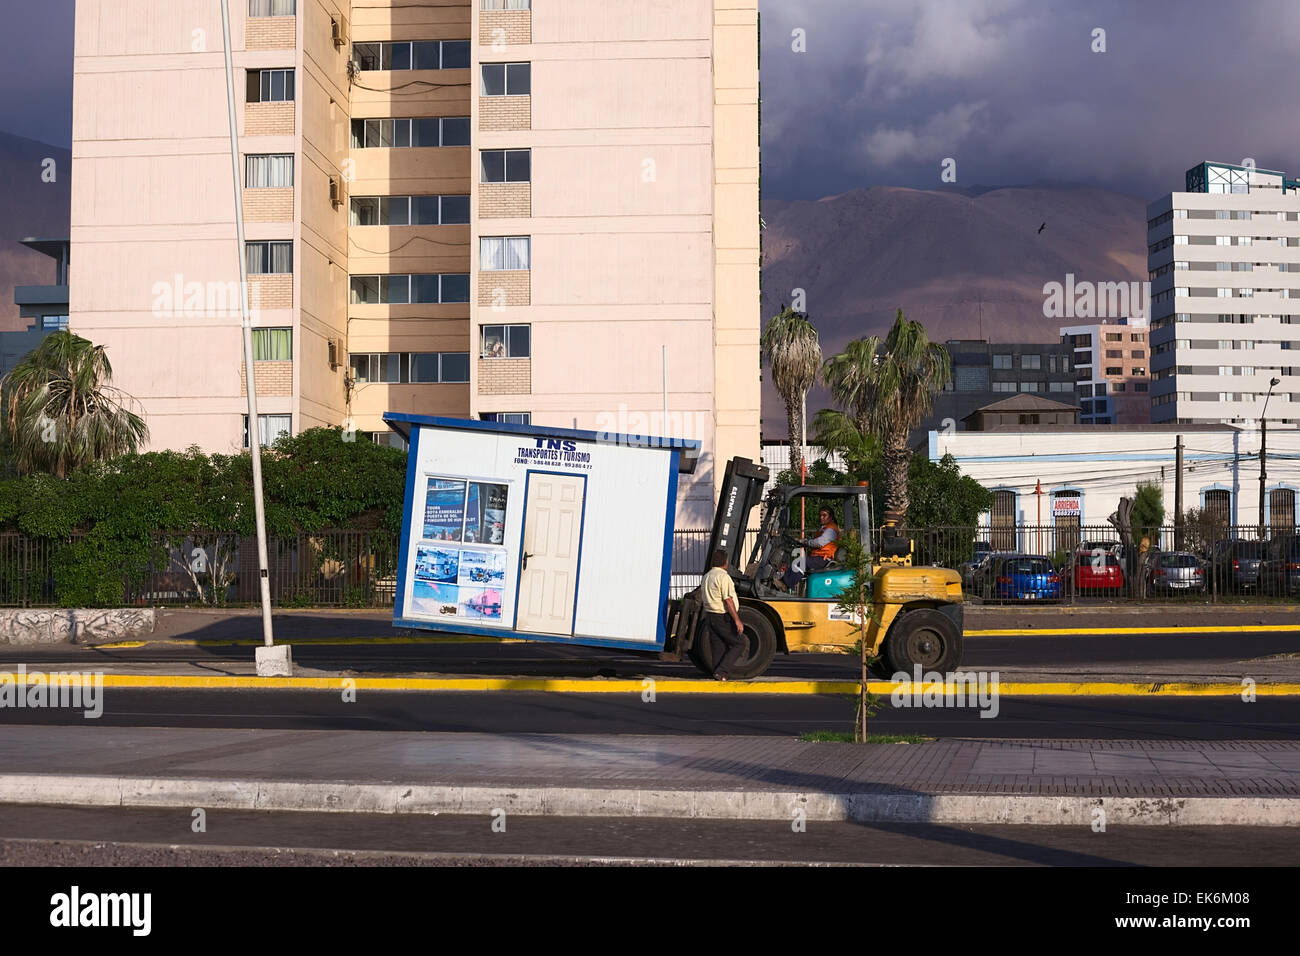 IQUIQUE, Cile - 22 gennaio 2015: persona non identificata il sollevamento di un piccolo stand con un carrello elevatore a forche su Arturo Prat Chacon avenue Foto Stock